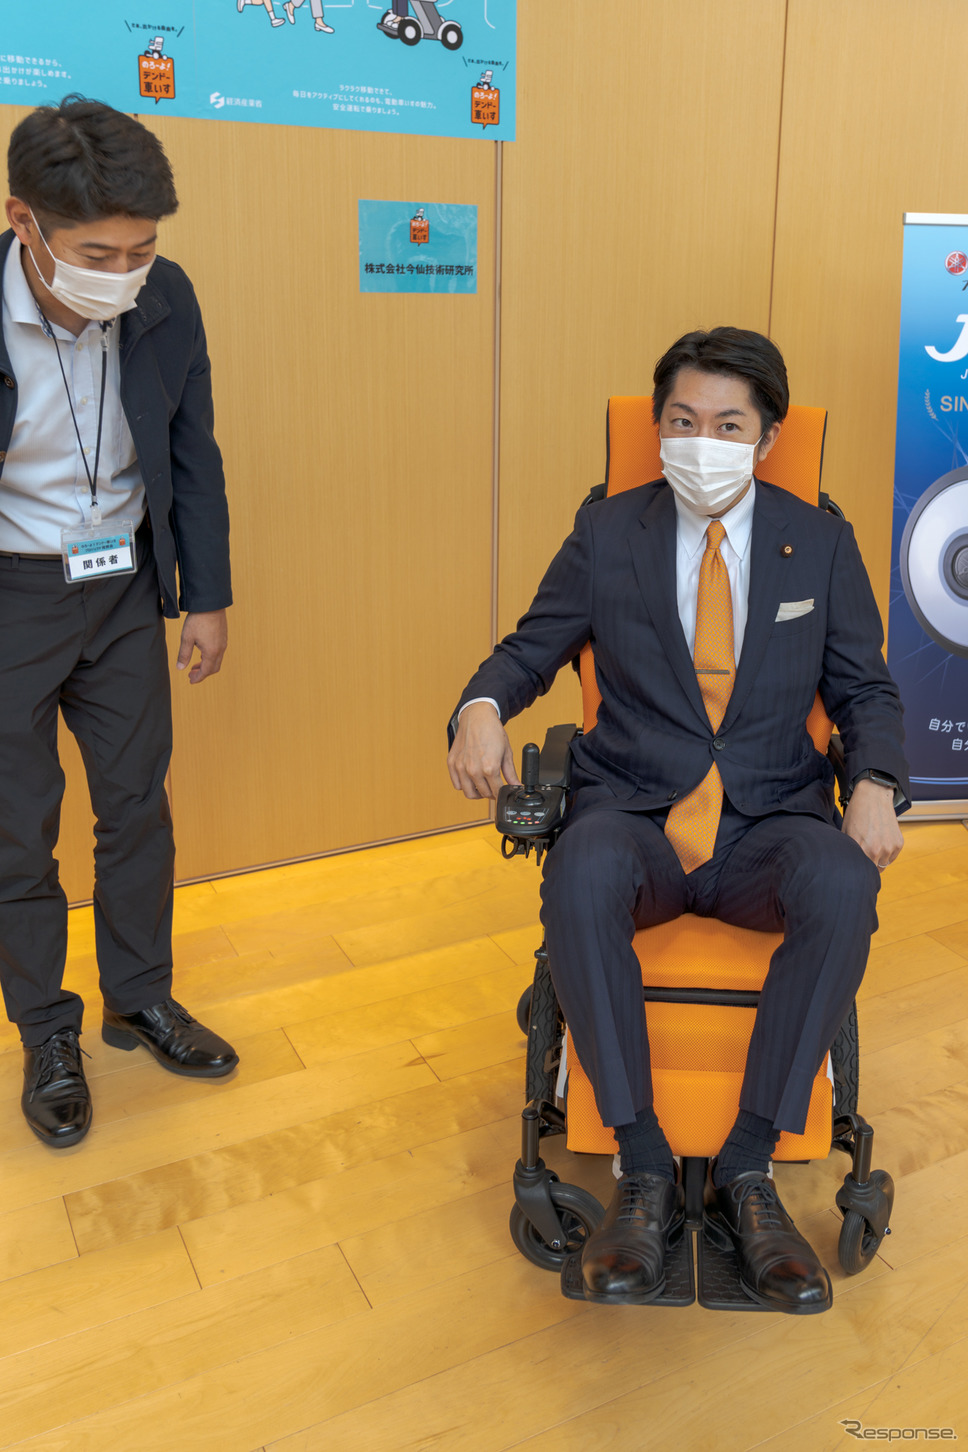 経済産業大臣政務官・佐藤啓氏も、展示コーナーで様々な電動車いすを試乗していた。《写真撮影 関口敬文》